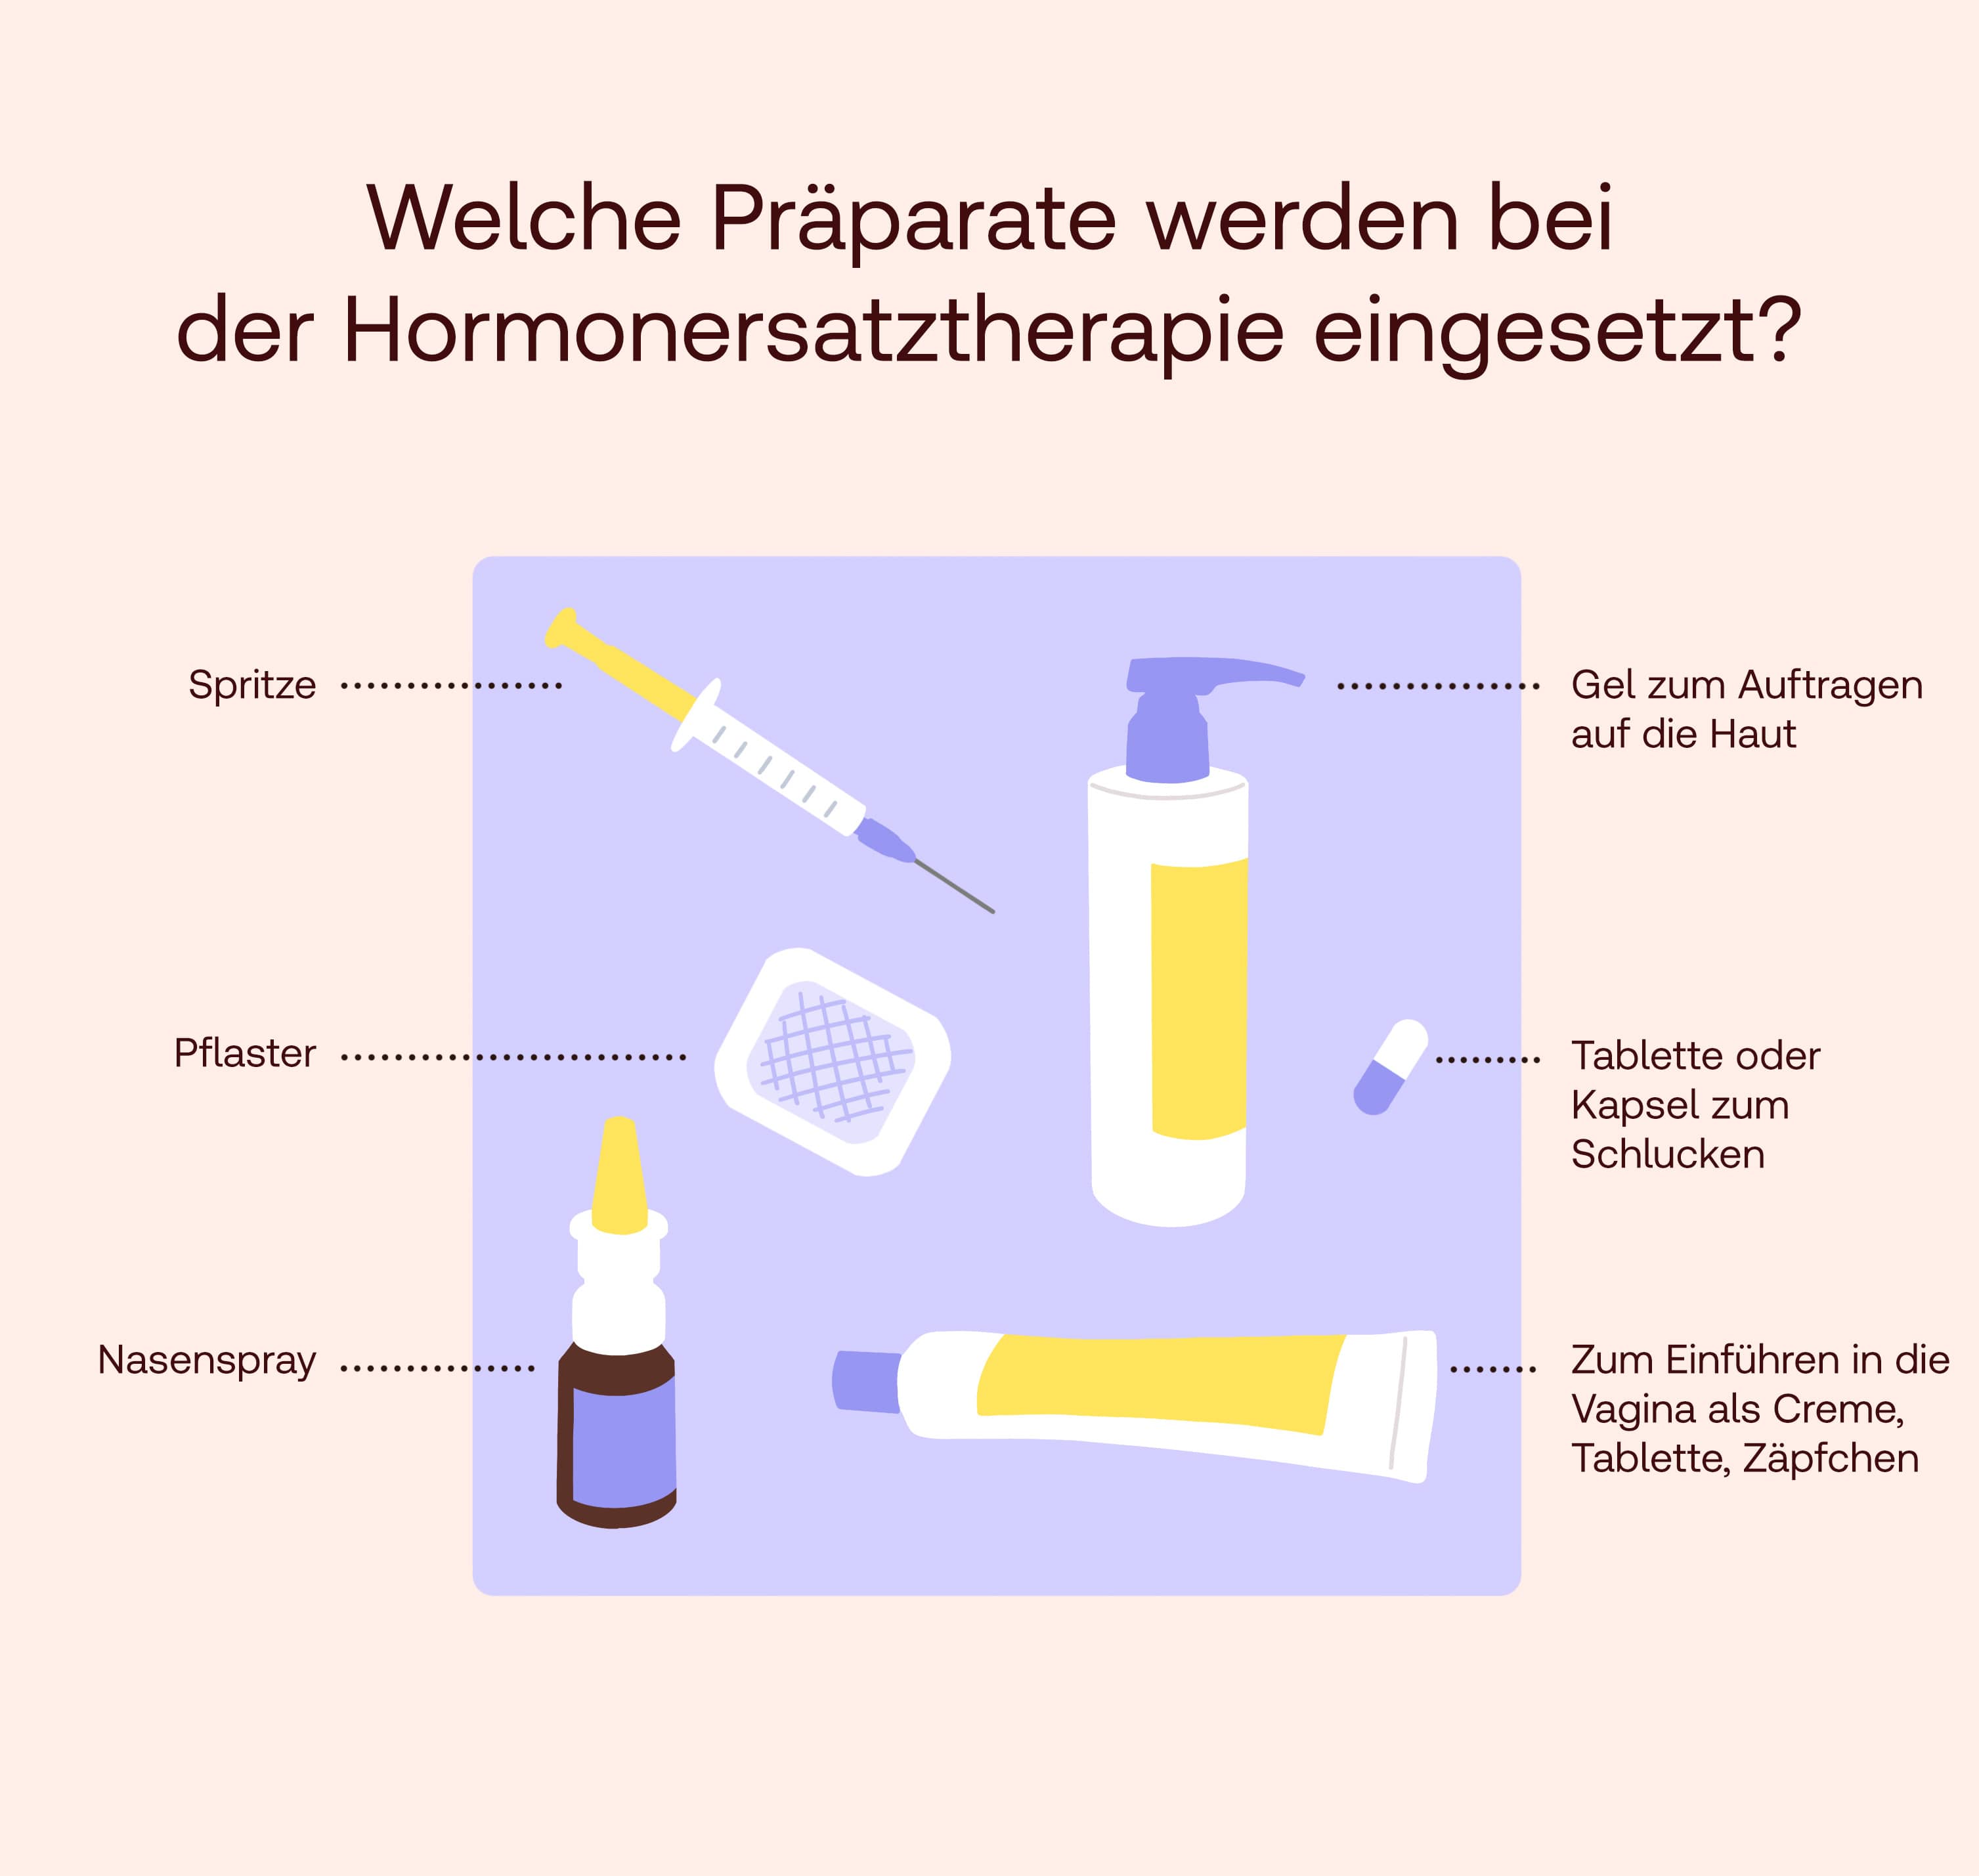 Welche Präparate werden bei der Hormonersatztherapie eingesetzt?